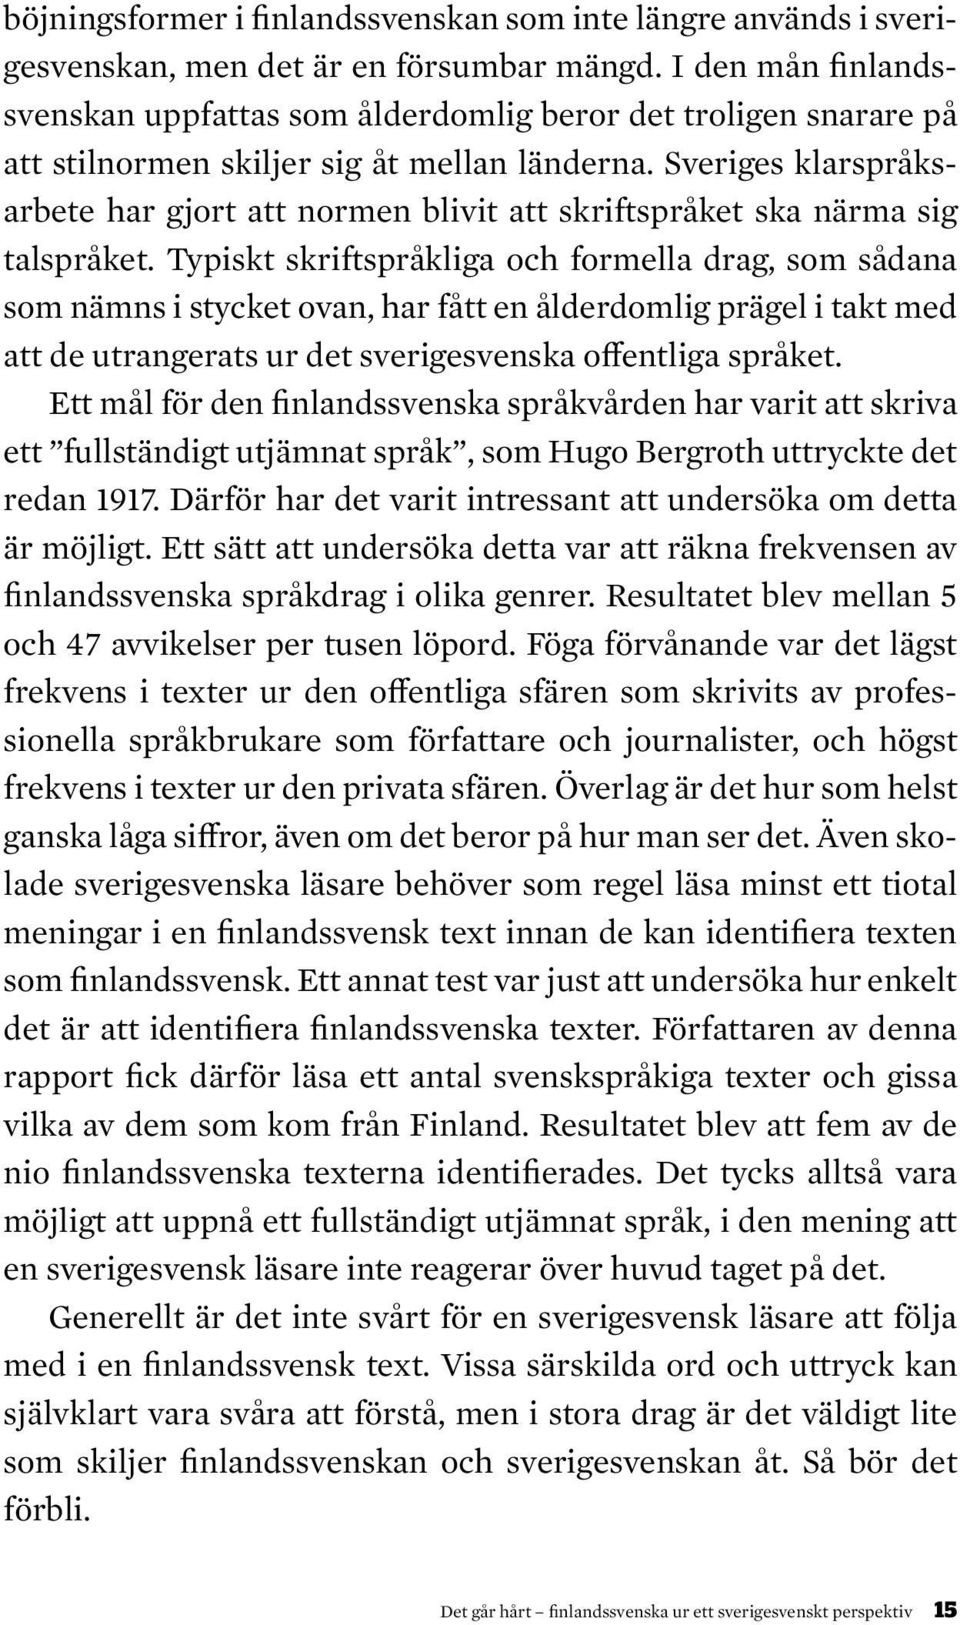 Sveriges klarspråksarbete har gjort att normen blivit att skriftspråket ska närma sig talspråket.